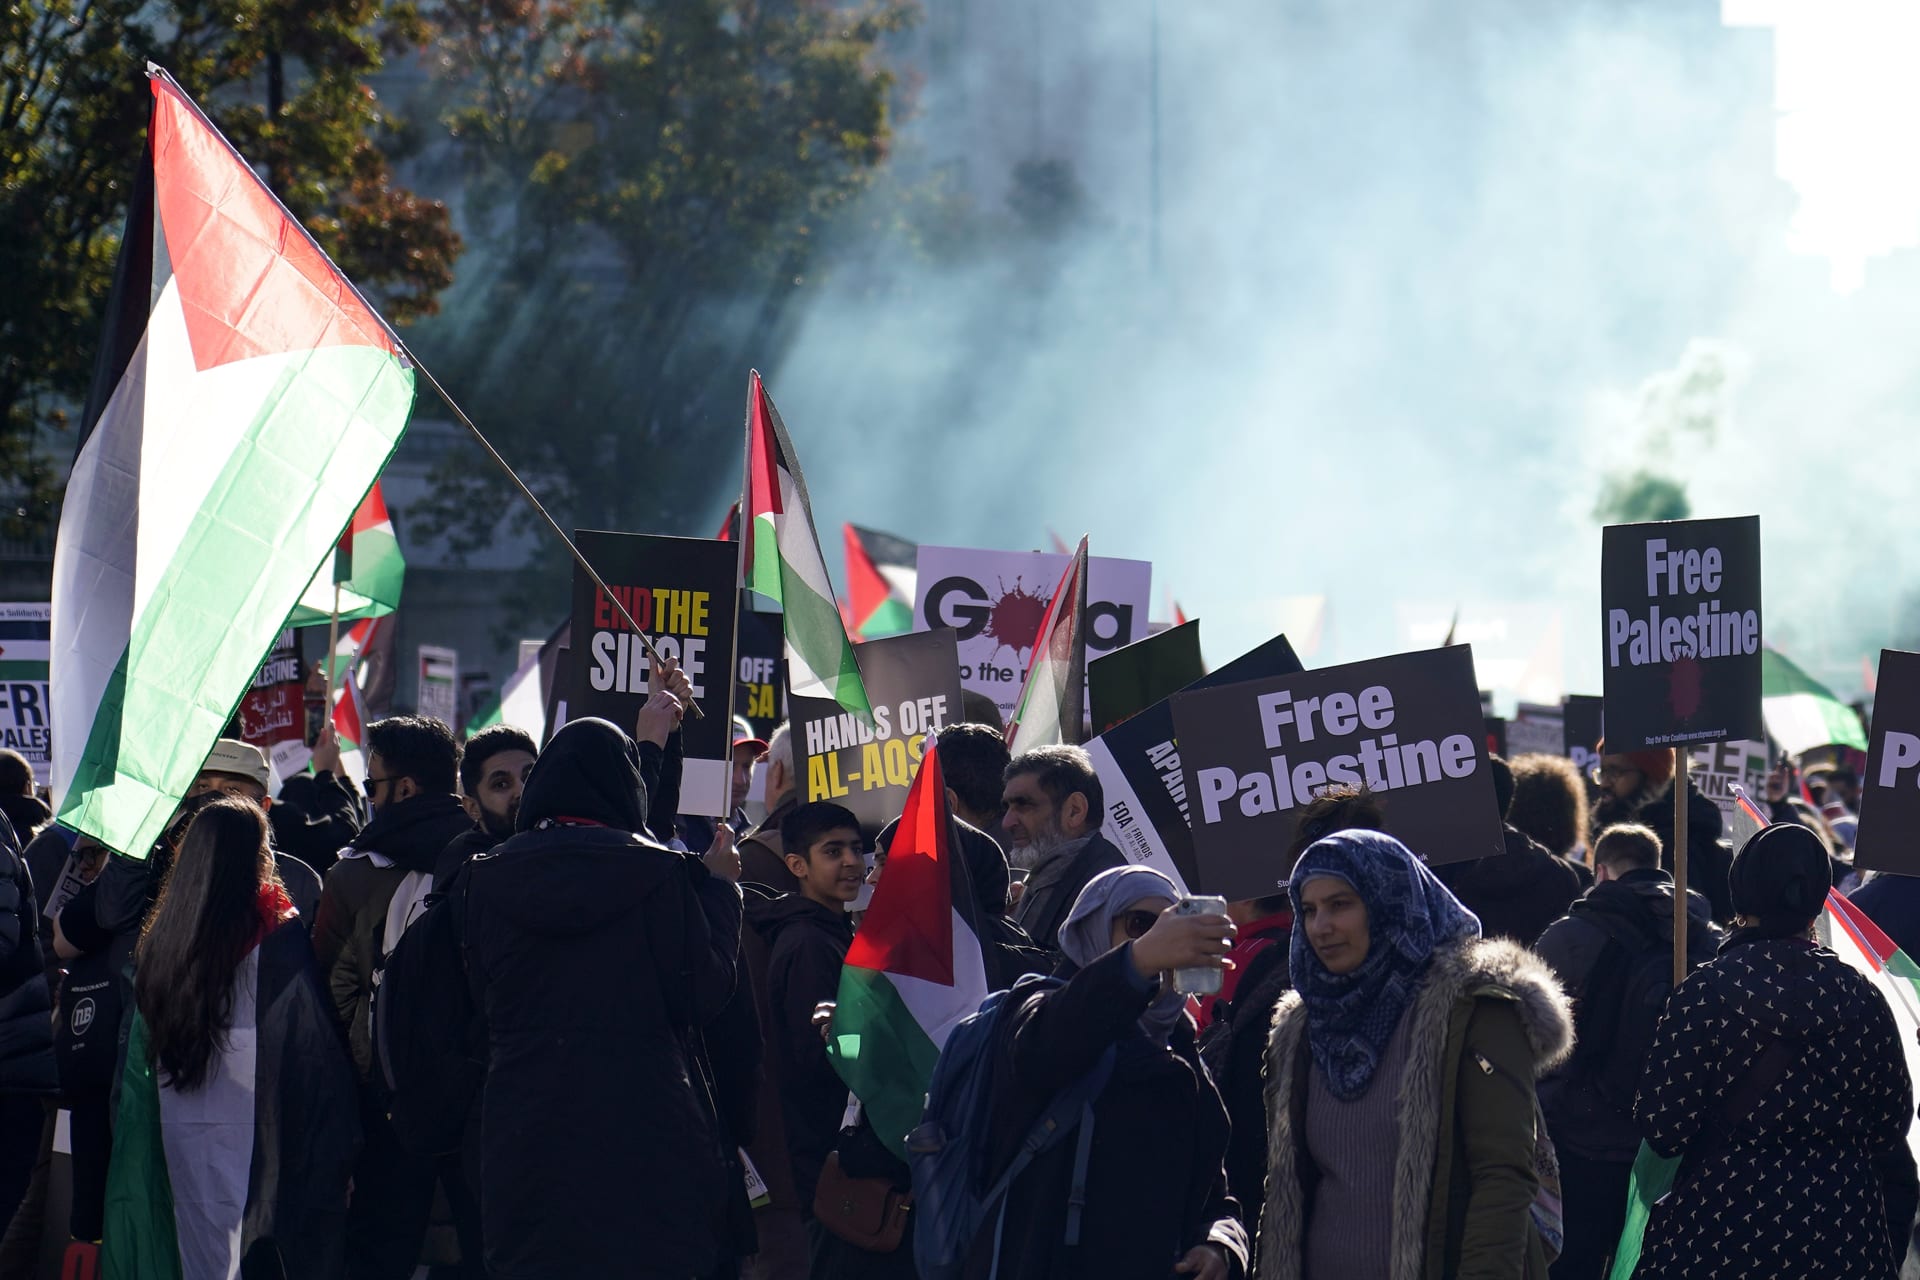 V Londýně se za velké účasti policistů koná pochod na podporu Palestinců.